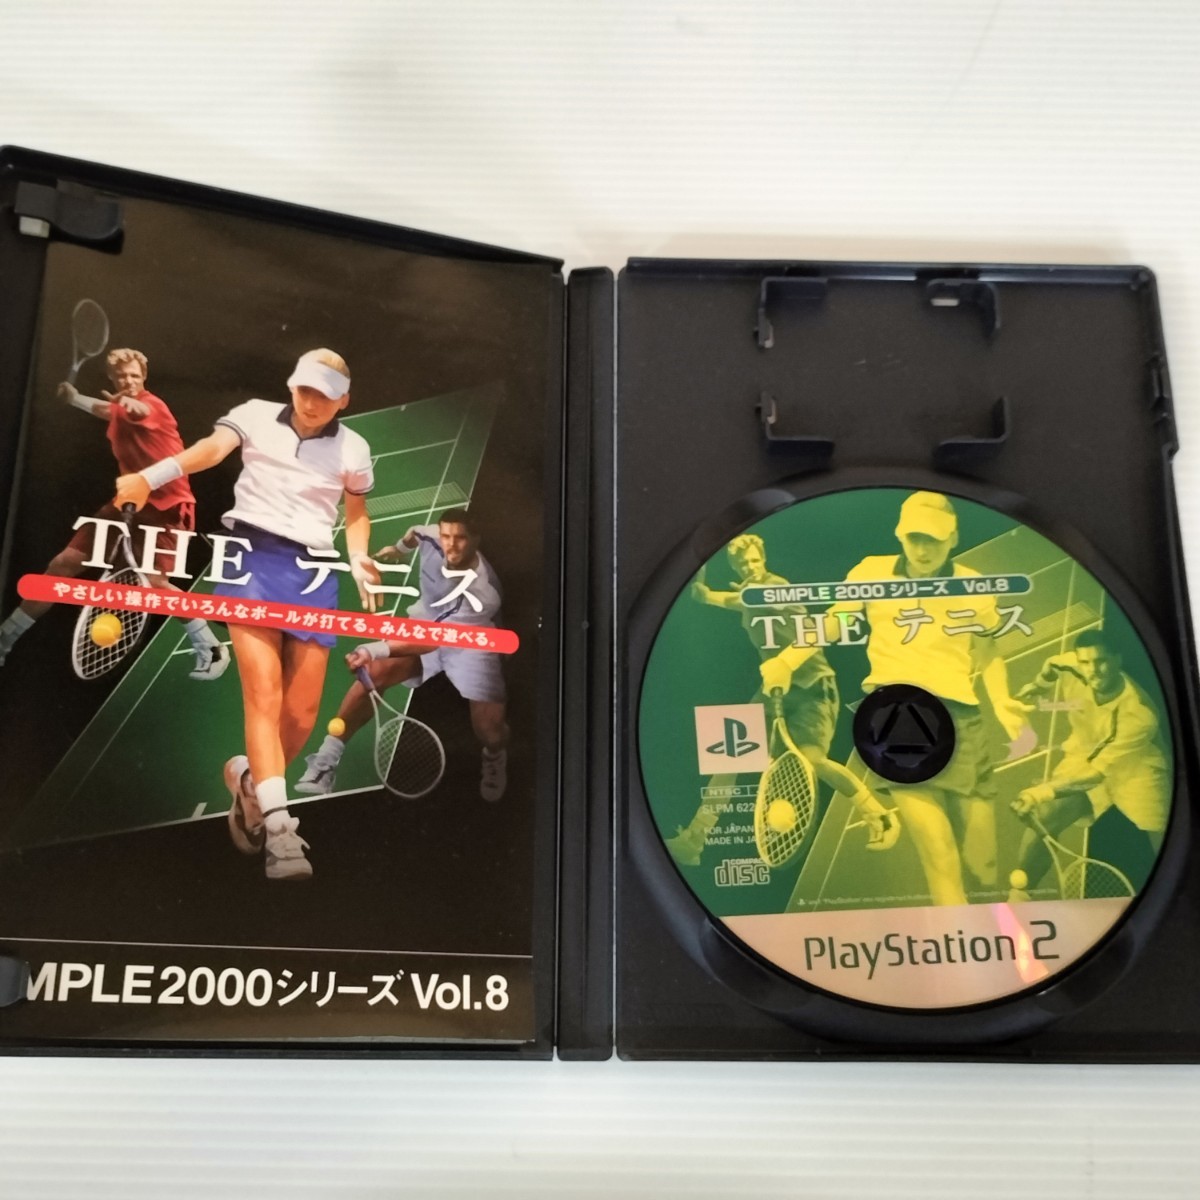 PS2ソフト「THE テニス」「熱チュー! プロ野球2002」2本まとめ、送料無料、匿名配送